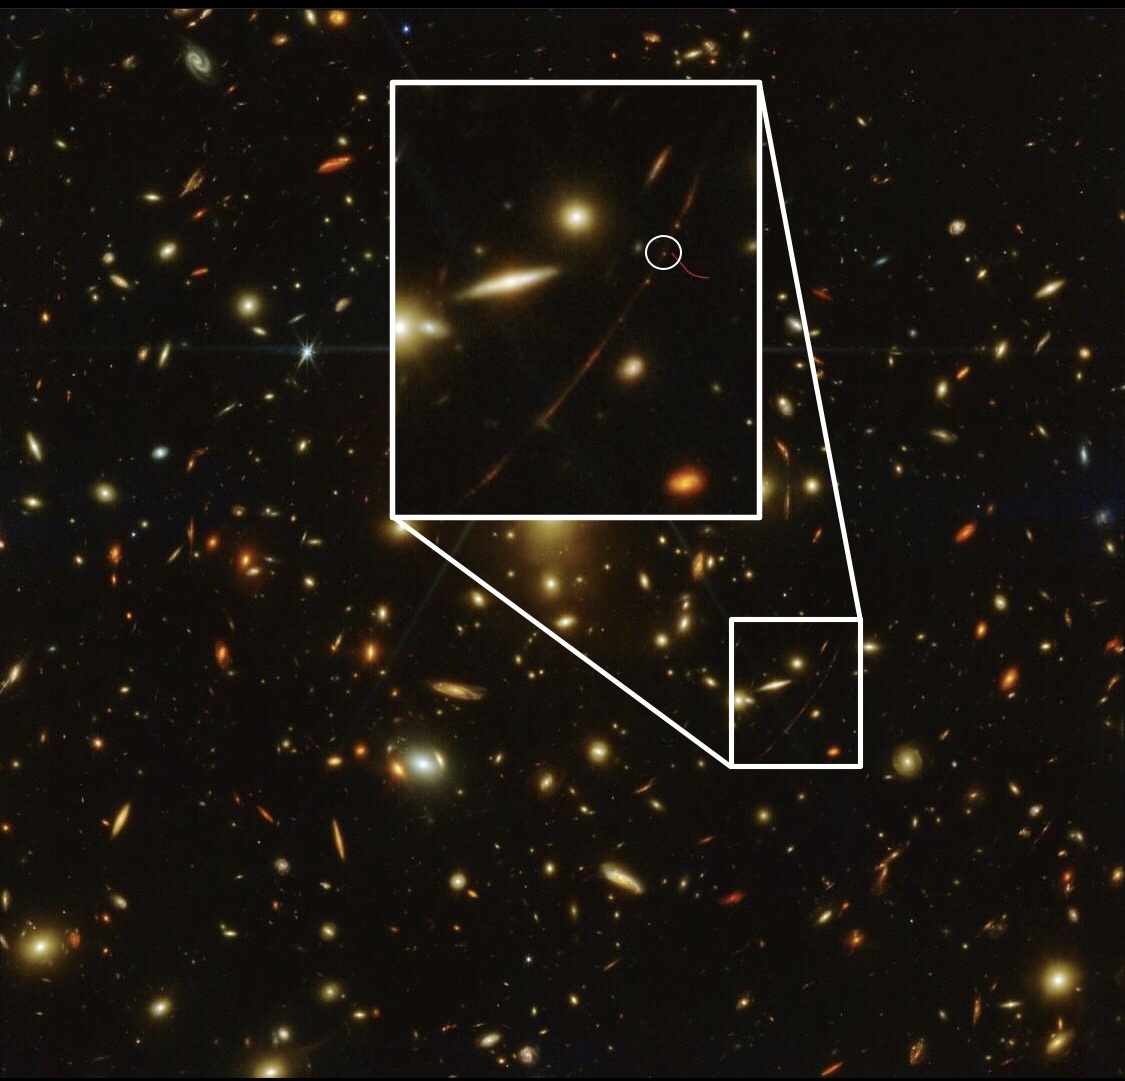 Телескоп Джеймса Уэбба засек самую дальнюю звезду во Вселенной